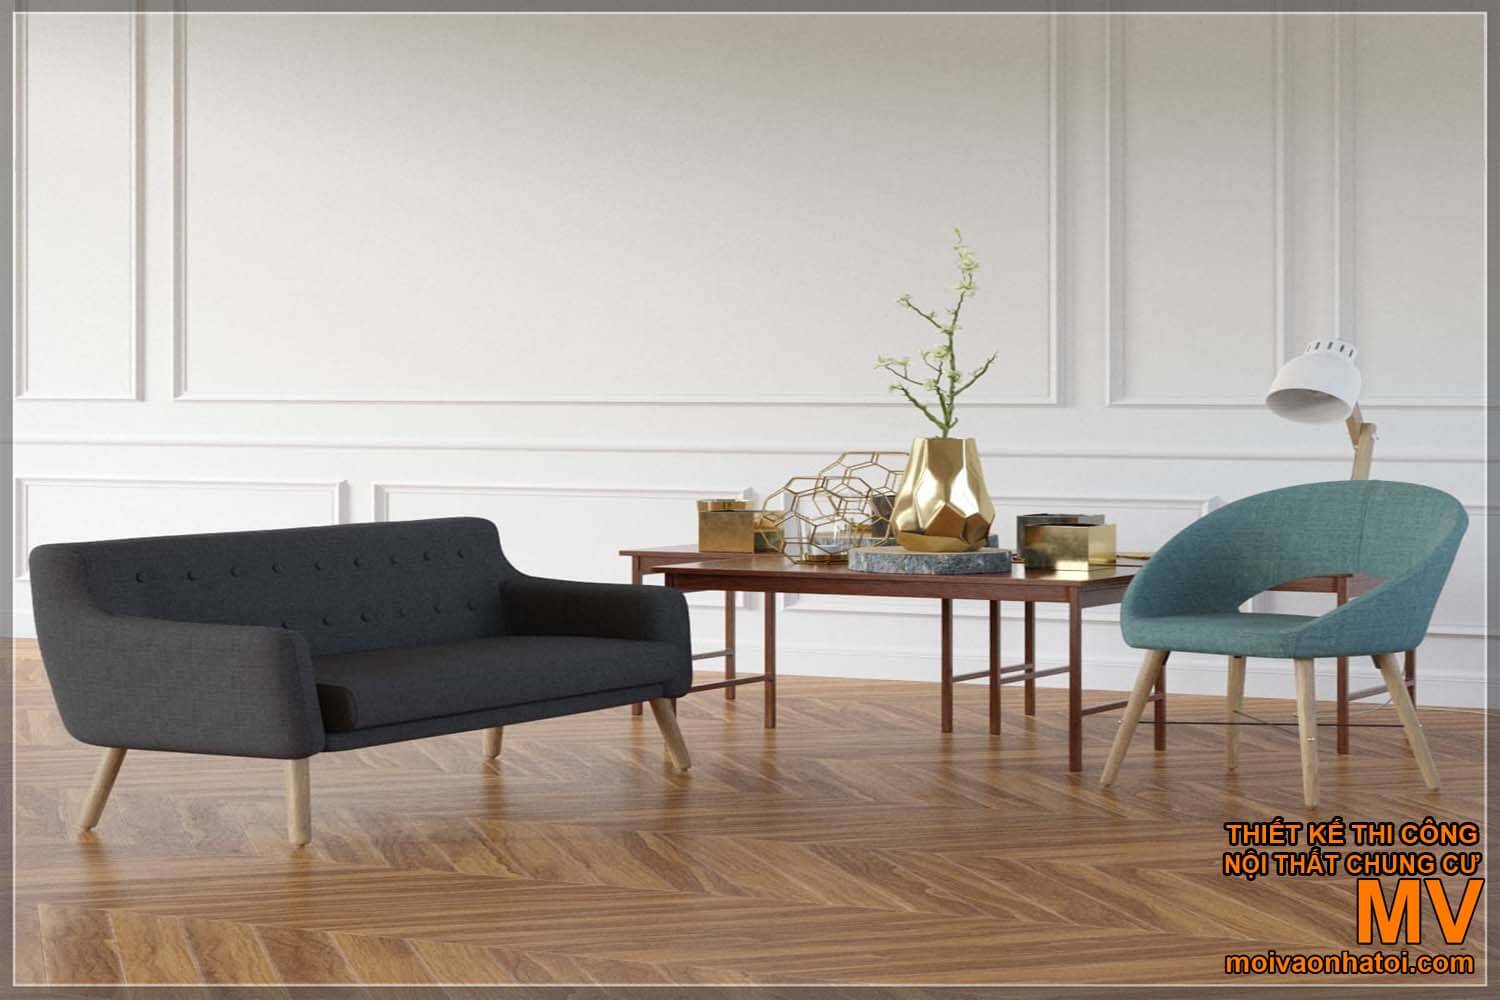 Mẫu bàn ghế nội thất phong cách scandinavian